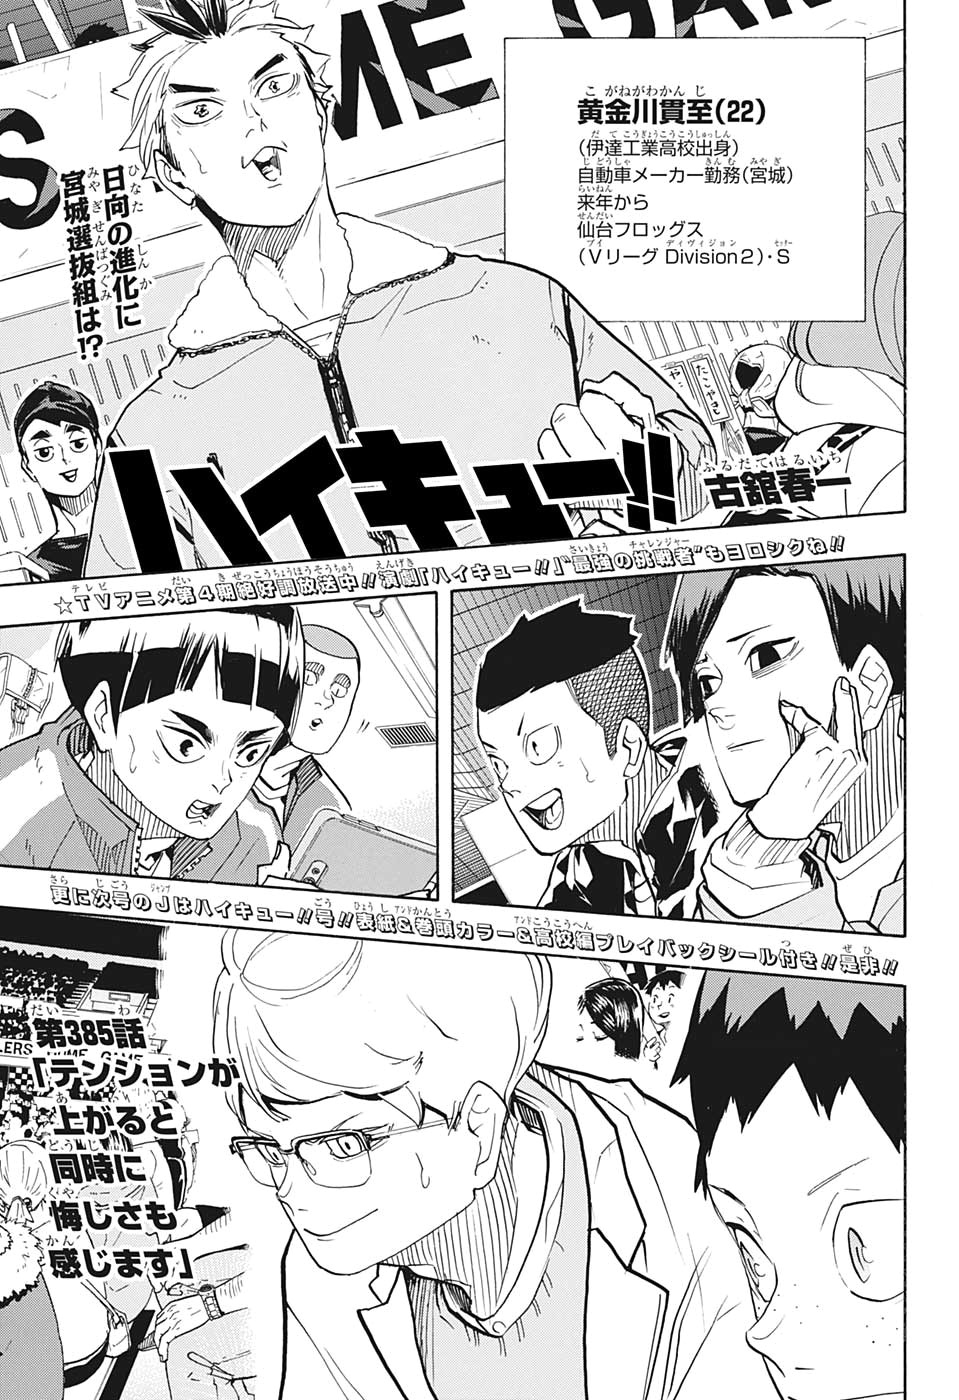 Haikyuu!!, Chapter 381 - Bitter Enemies in The Same Boat - Haikyuu!! Manga  Online